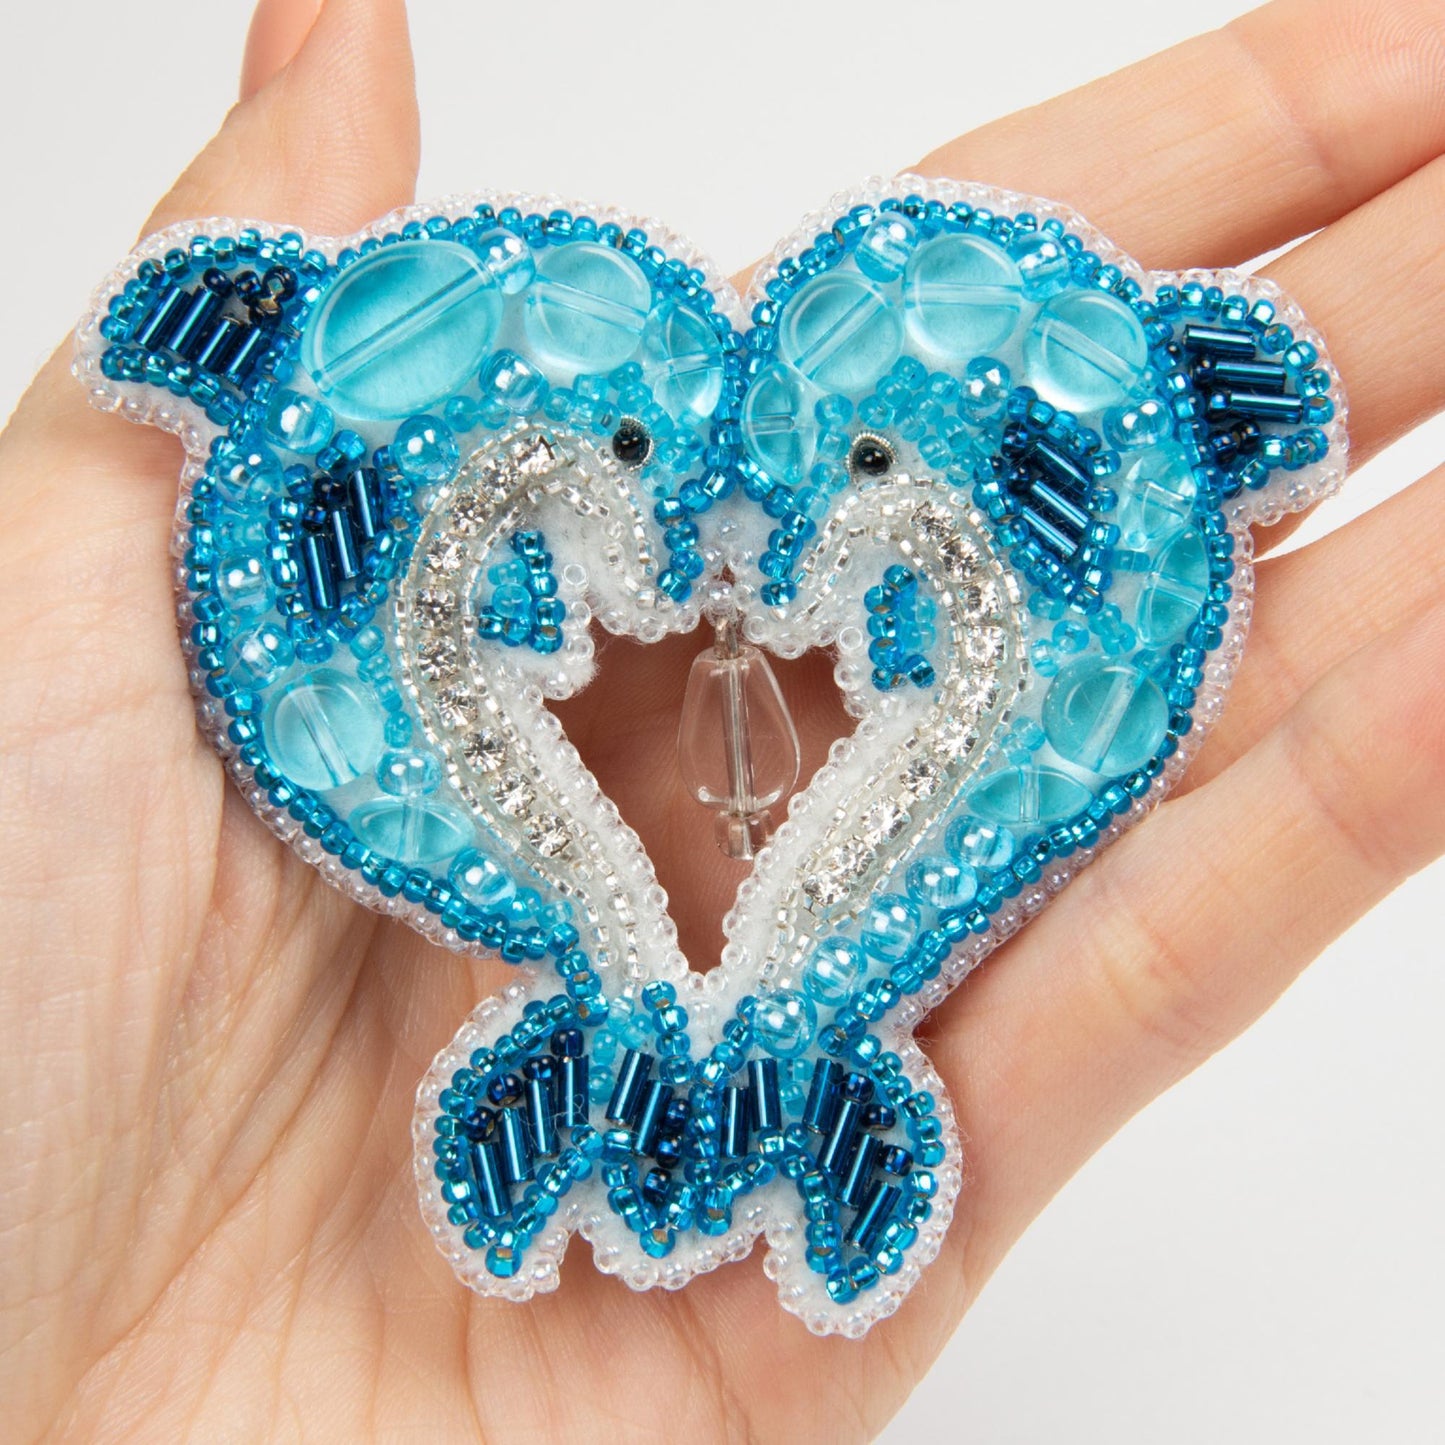 BP-280 Beadwork kit for creating broоch Crystal Art "Dolphins" - Leo Hobby